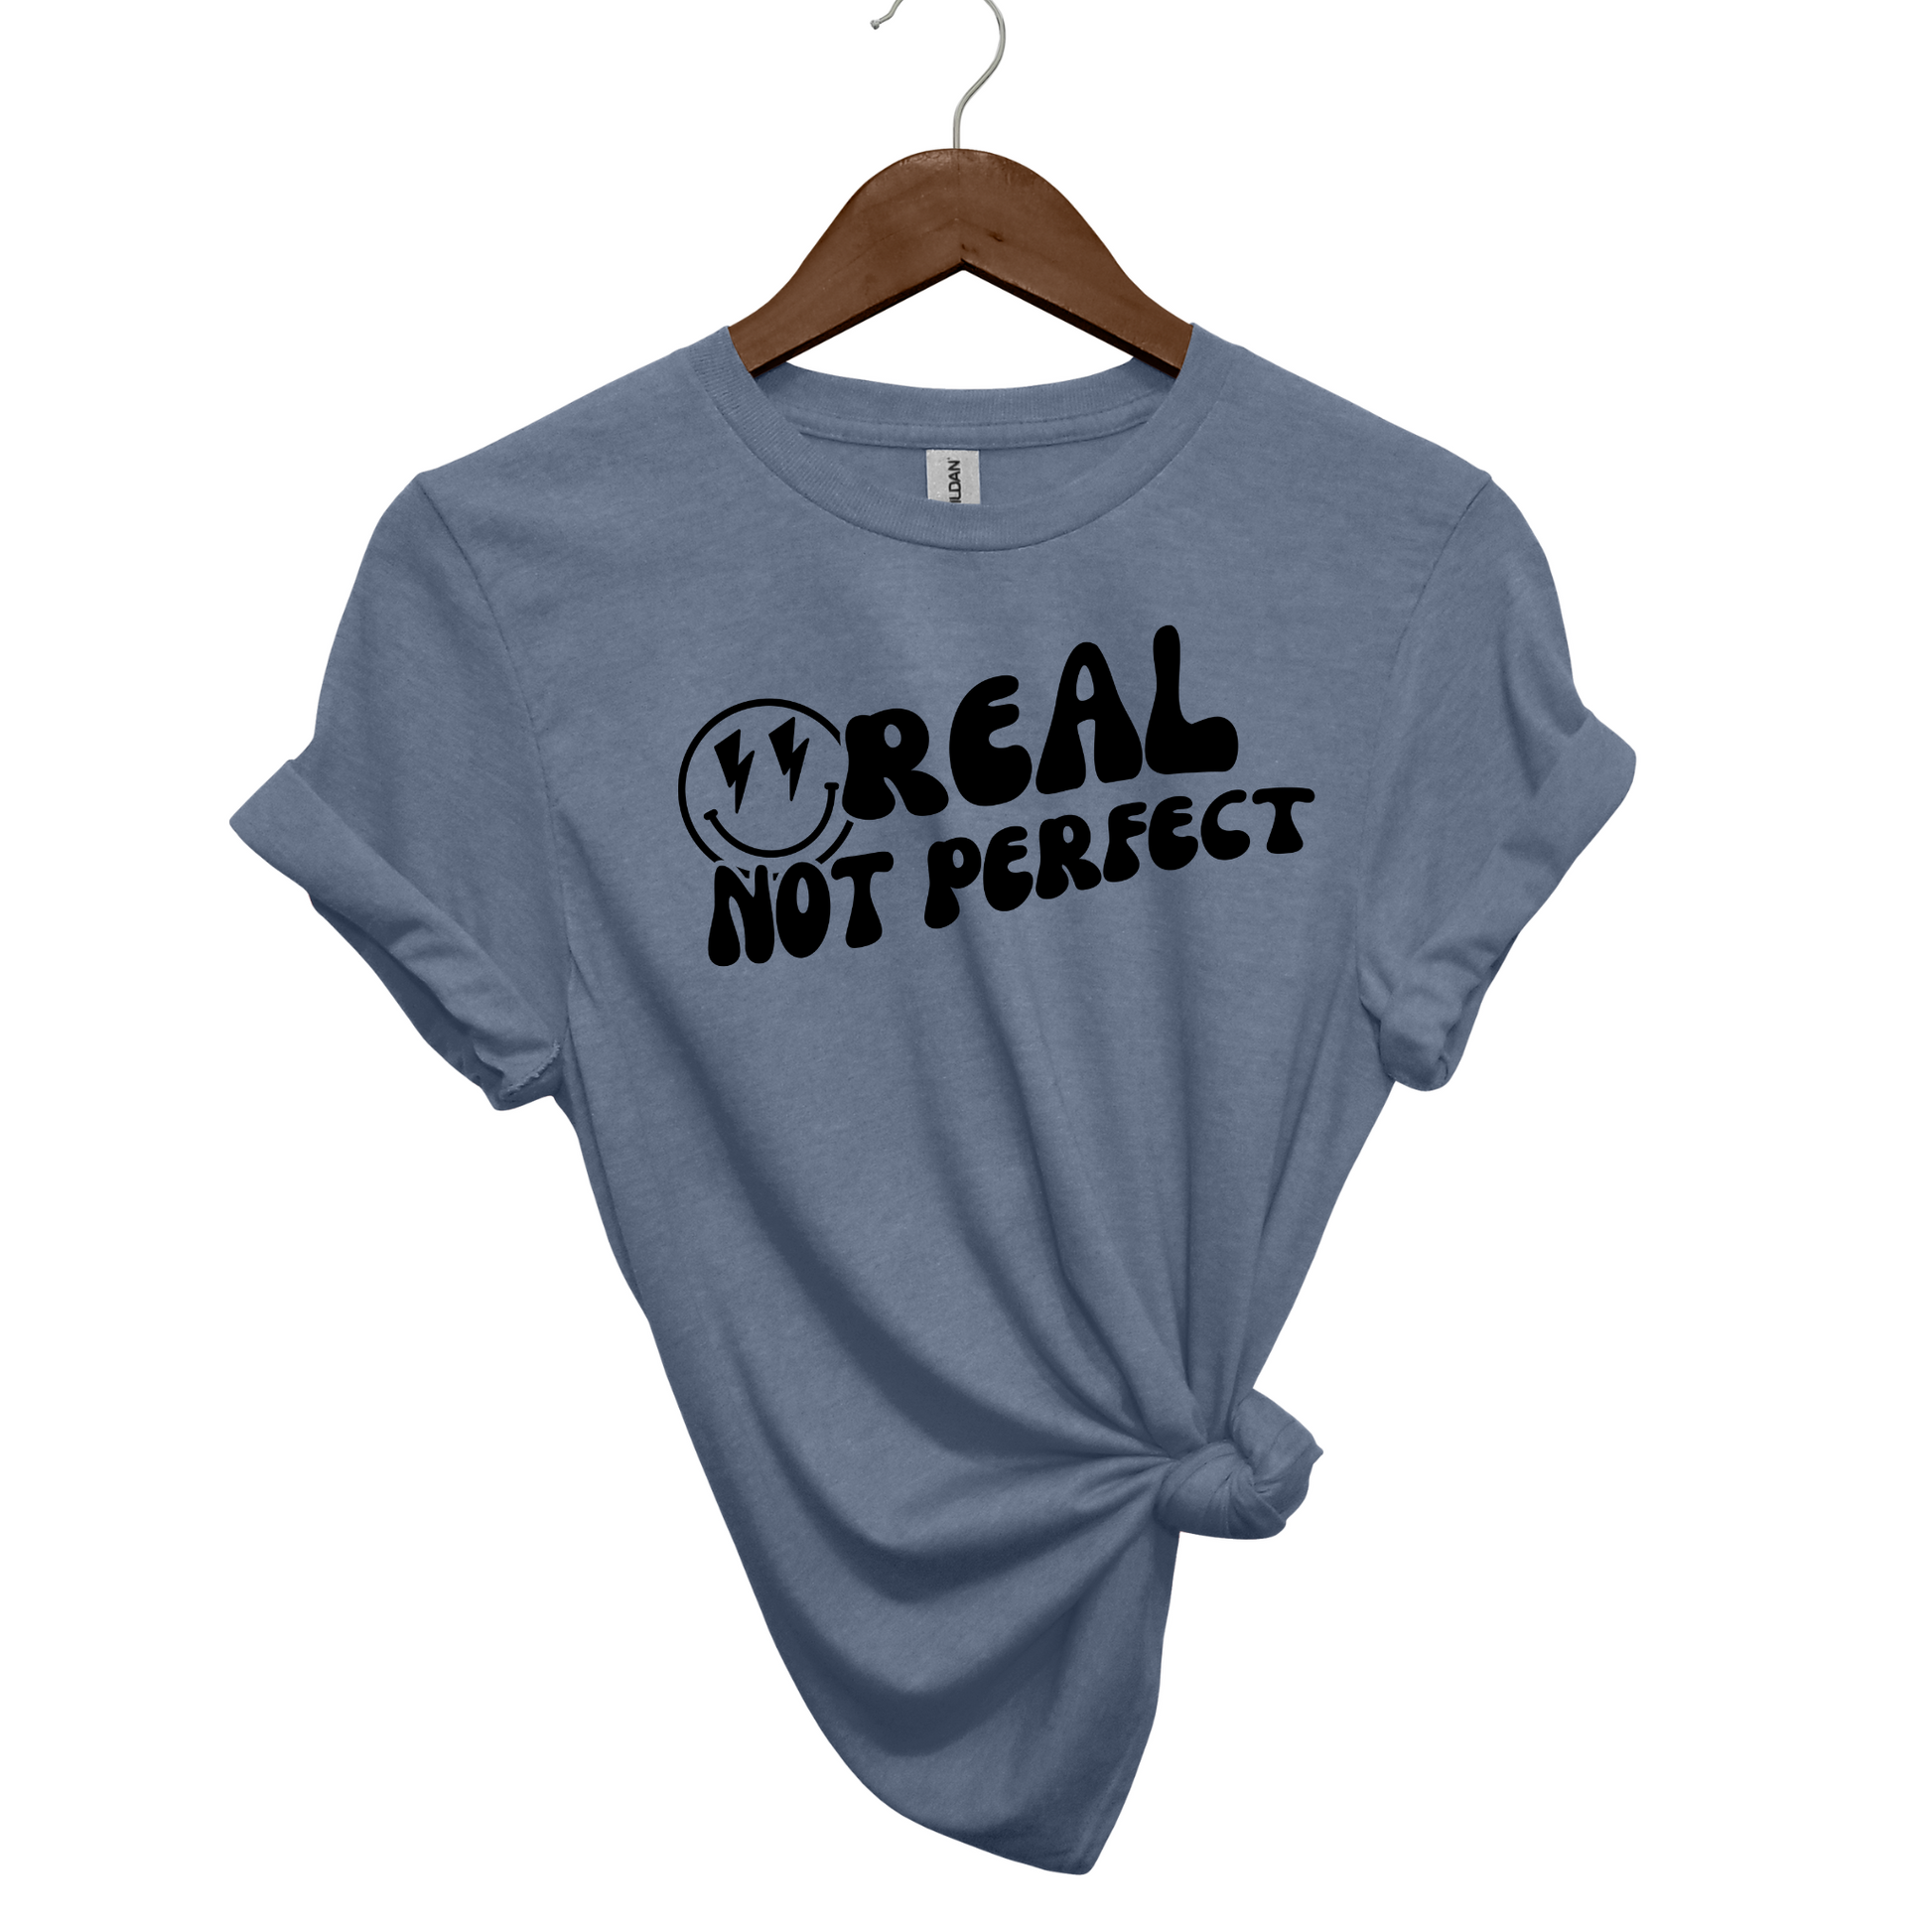 Real, Not Perfect Crewneck T Shirt heather indigo